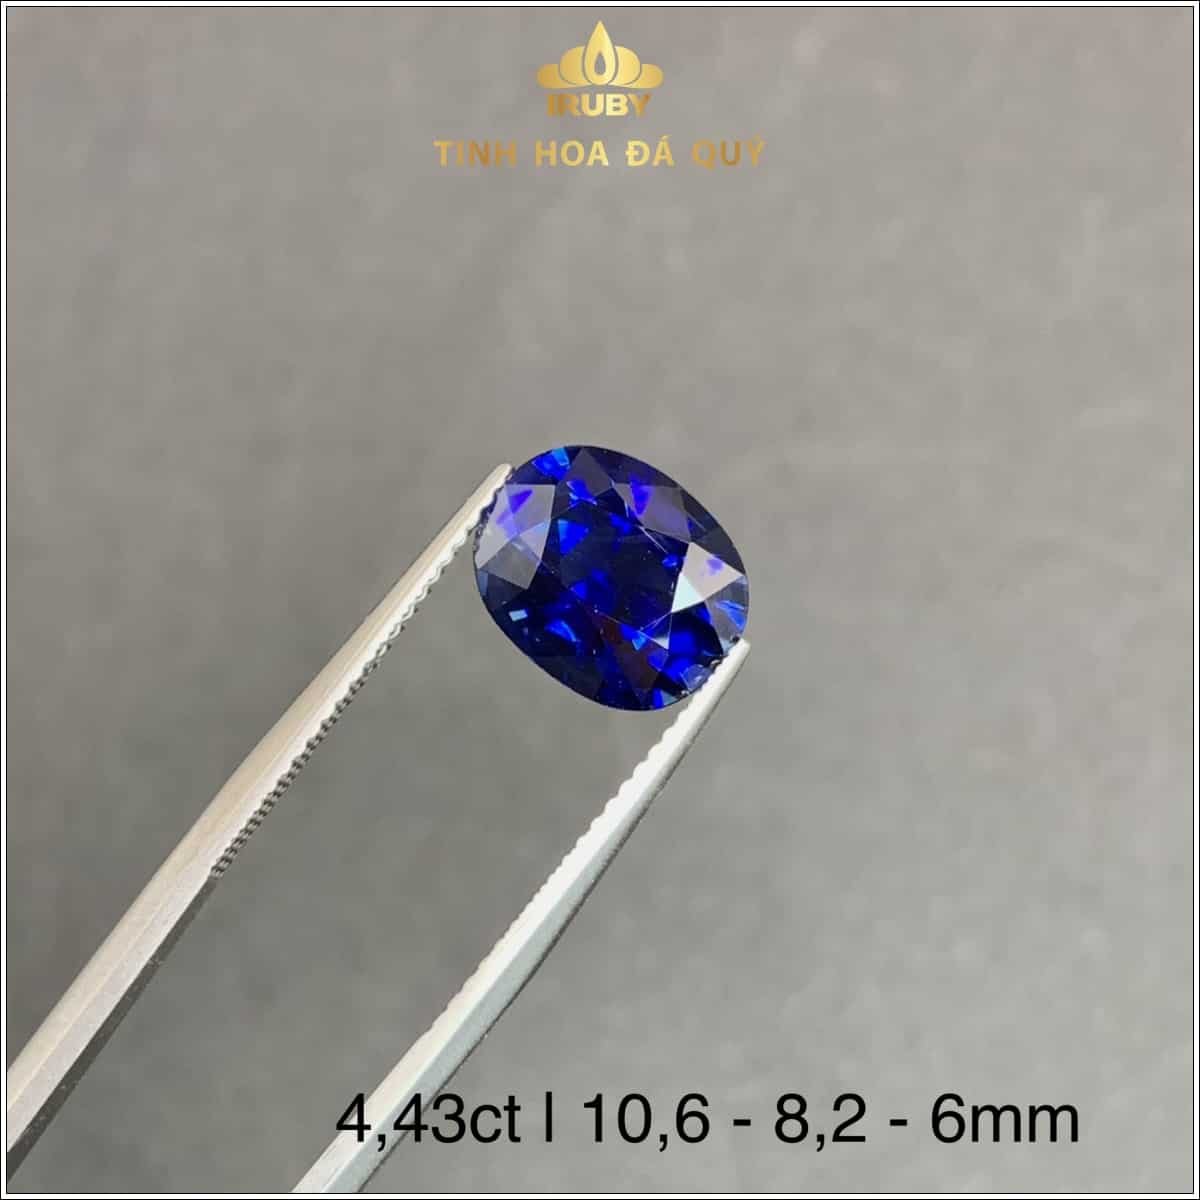 viên Sapphire màu xanh lam hoàng gia 4,43ct - IRSP 235443 hình ảnh